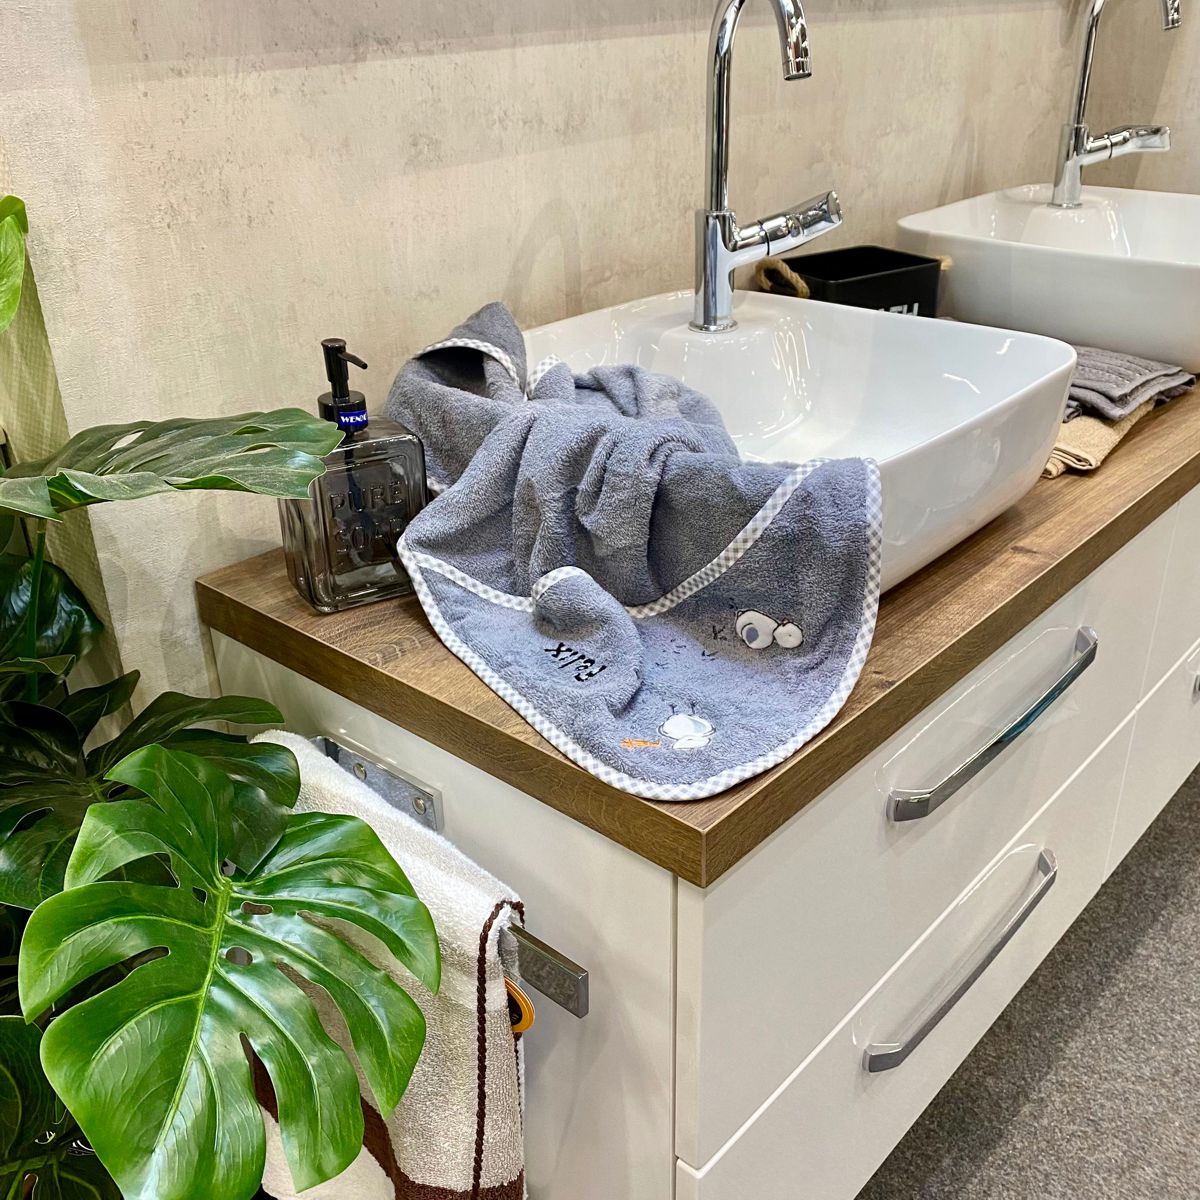 BIO-Handtuch Küken grau liegt auf Waschbecken